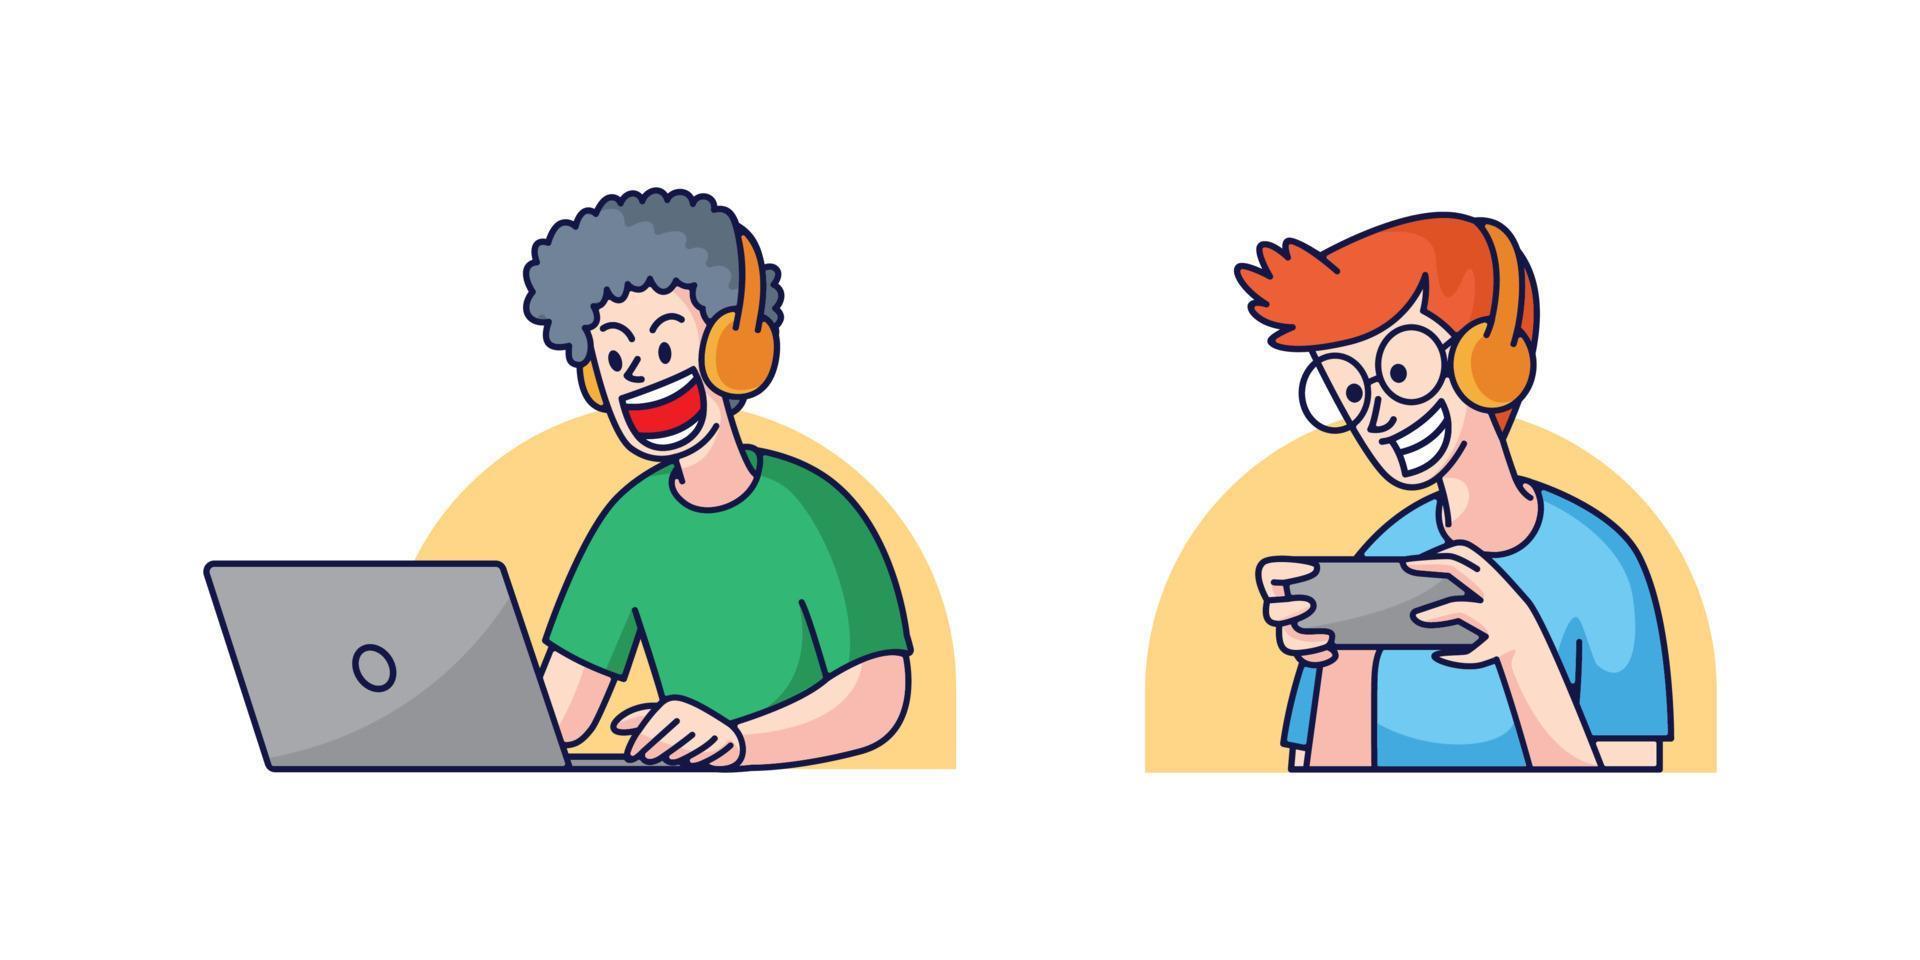 hommes jouant au jeu sur l'illustration d'un smartphone et d'un ordinateur portable vecteur